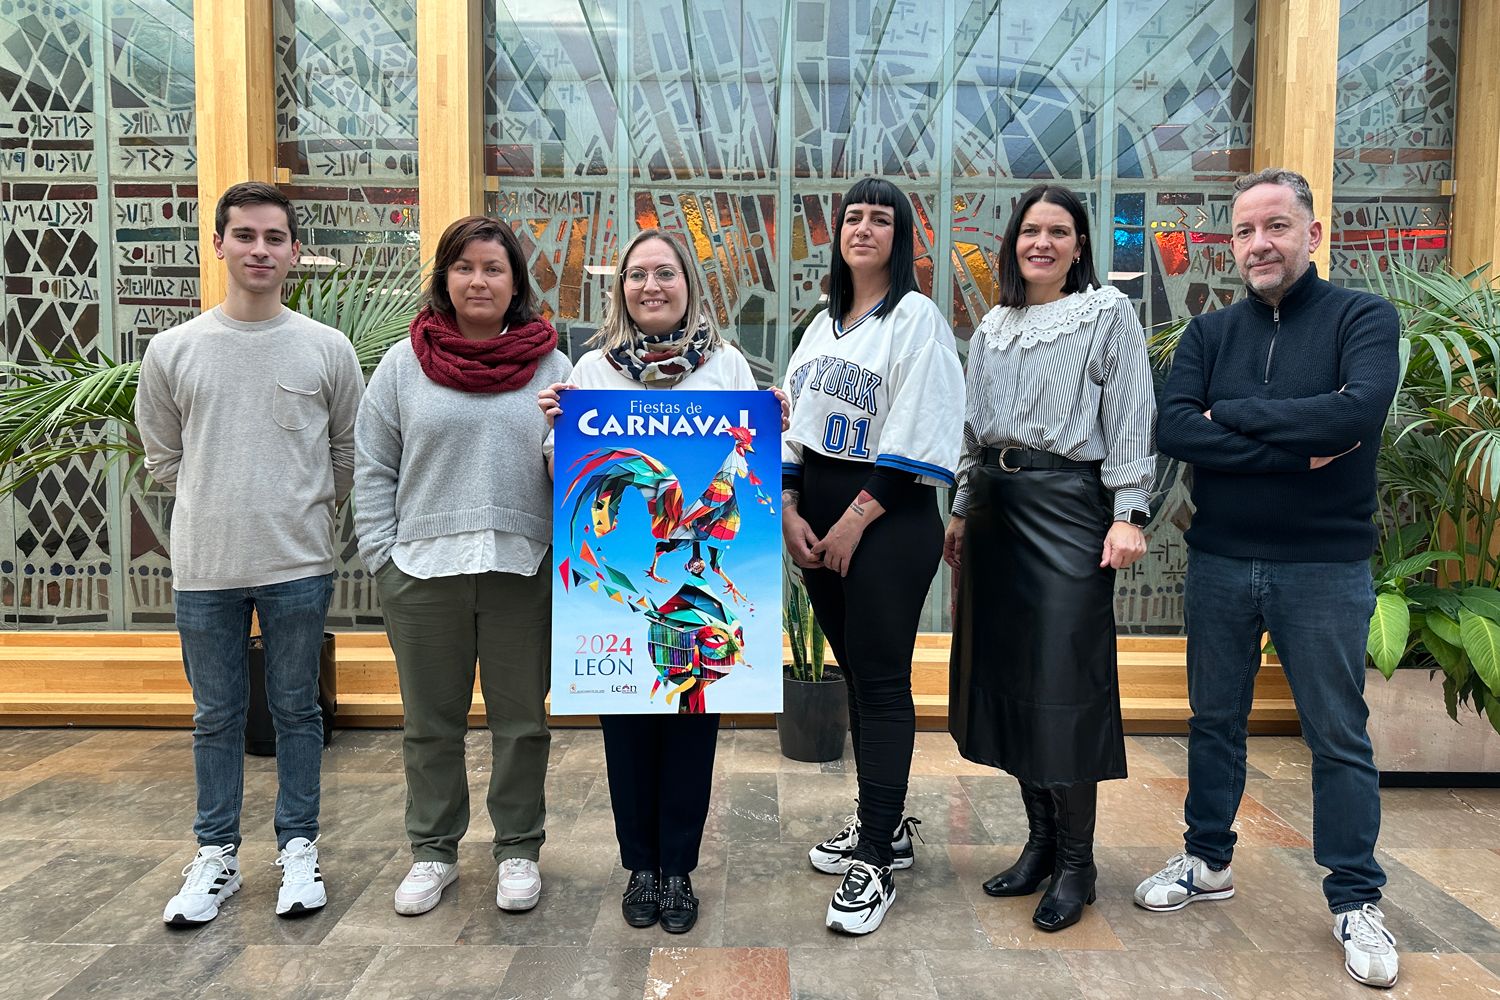 Presentación del cartel anunciador del Carnaval de León